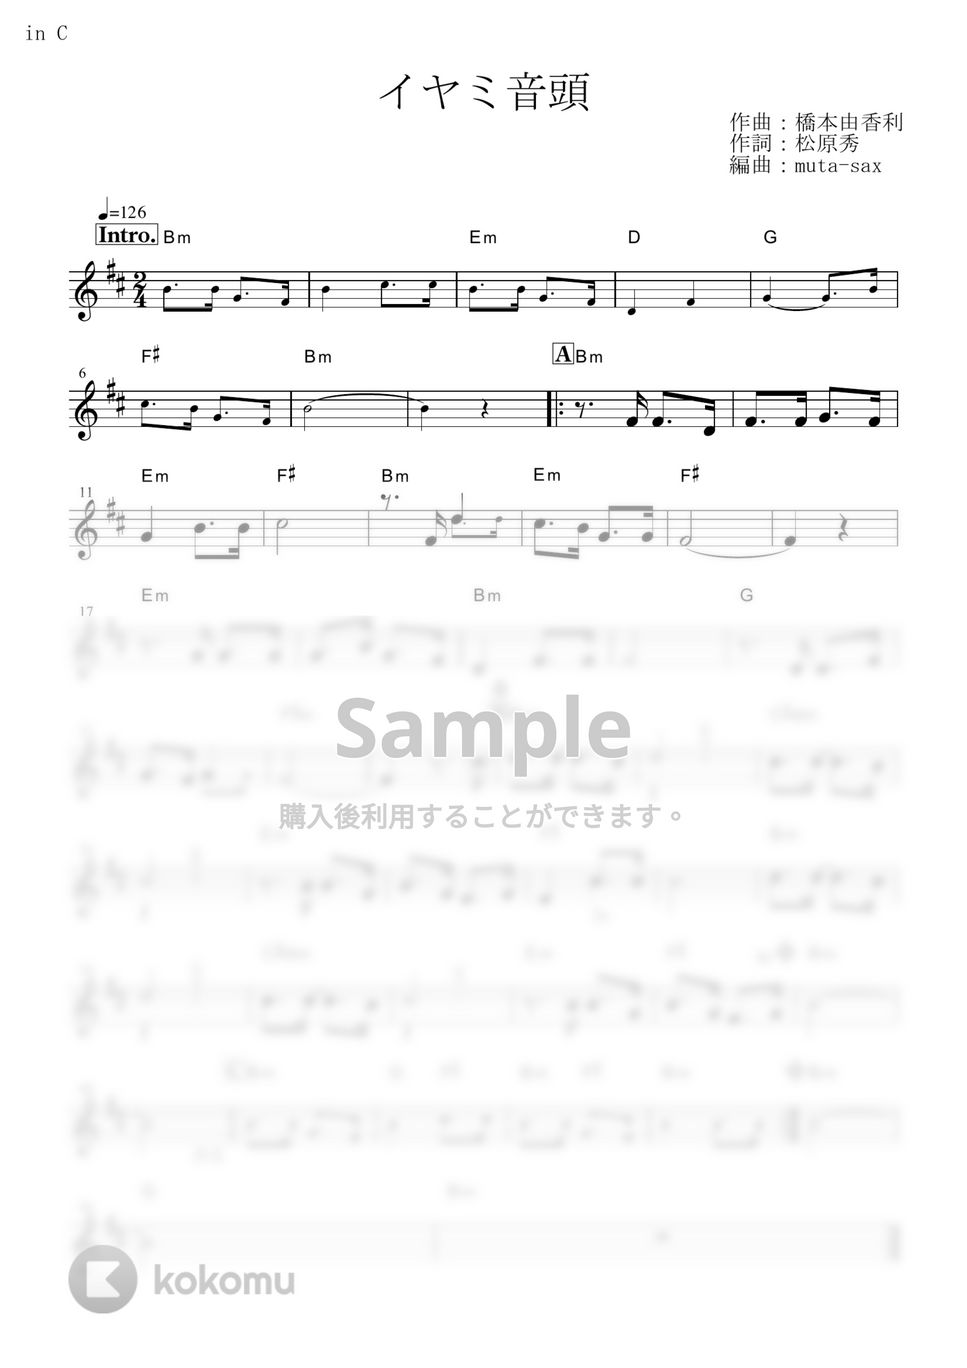 イヤミ(CV.鈴村健一) - イヤミ音頭 (『おそ松さん』 / in C) by muta-sax